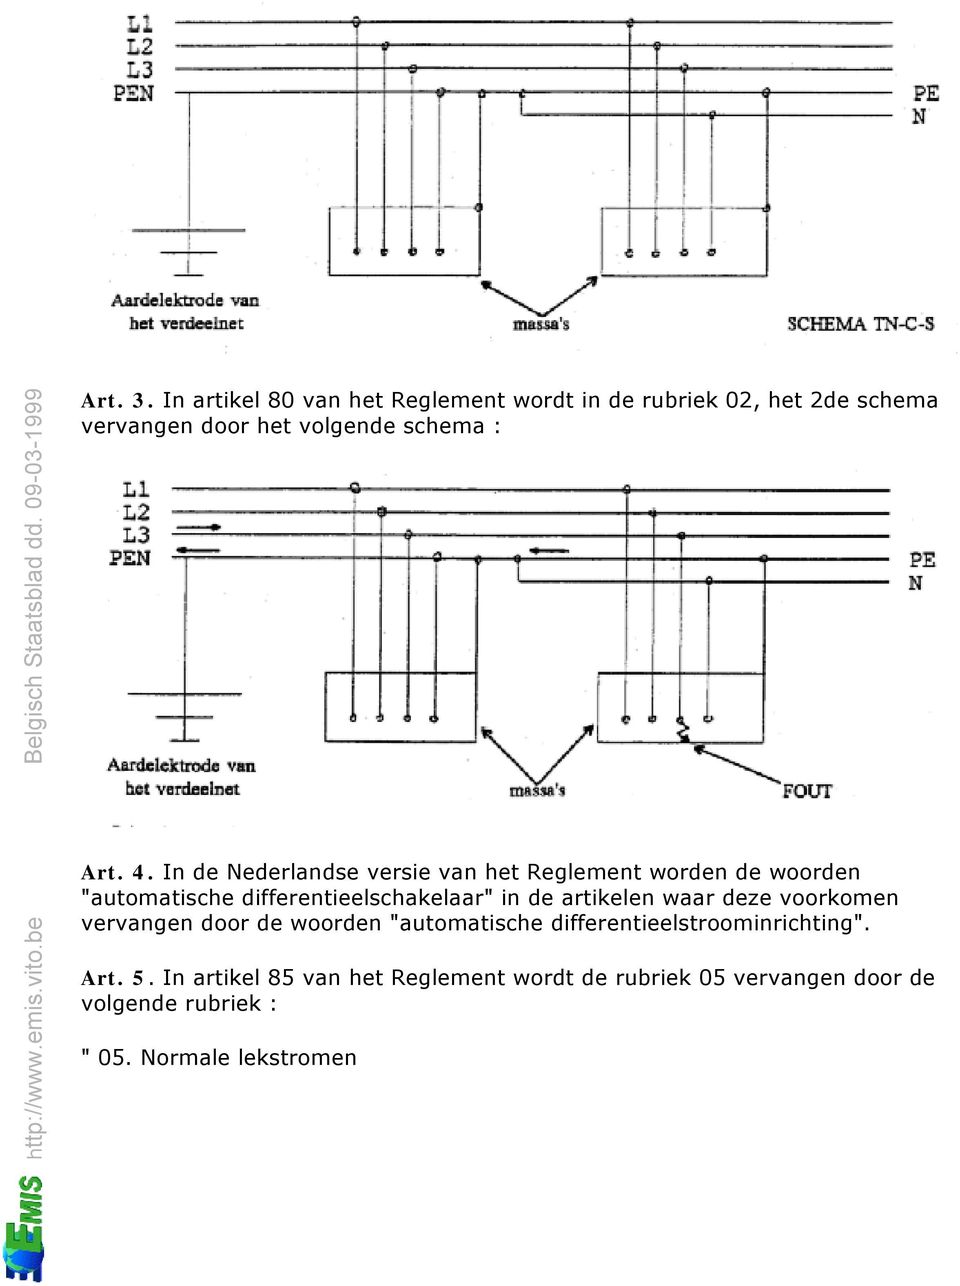 4. In de Nederlandse versie van het Reglement worden de woorden "automatische differentieelschakelaar" in de